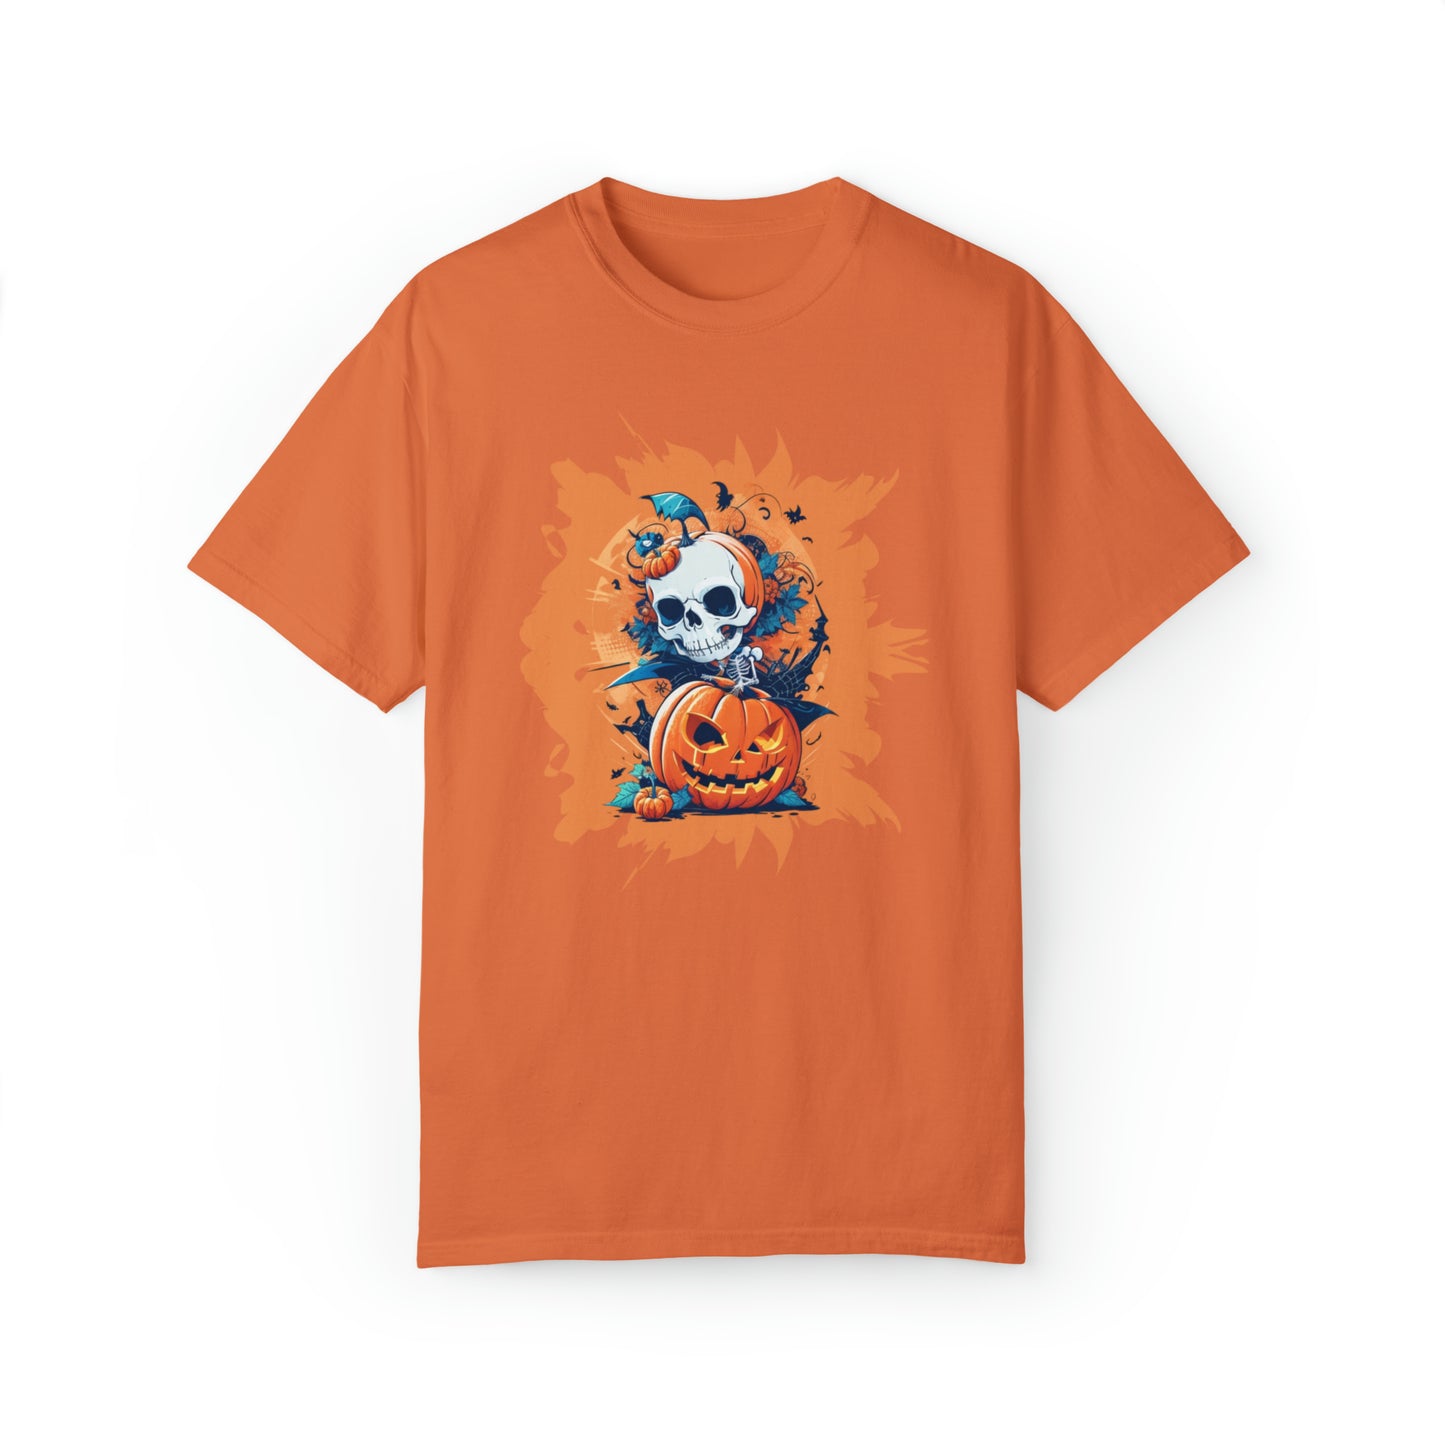 Unisex Garment-Dyed T-shirt - Halloween -  Skull and pumpkins